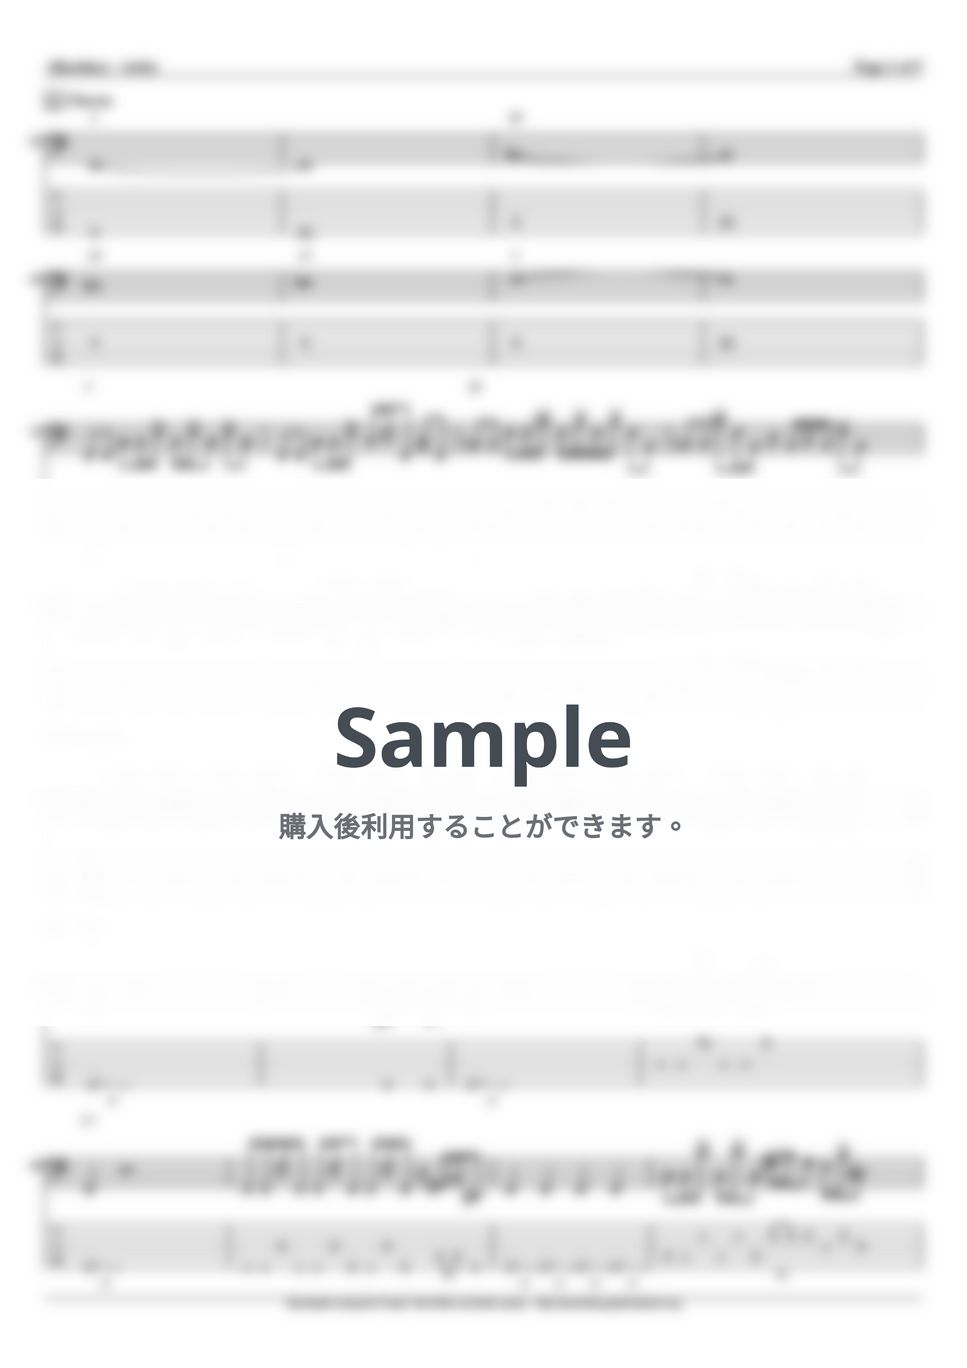 らき☆すた - もってけ!セーラーふく (ベース Tab譜 5弦) by T's bass score